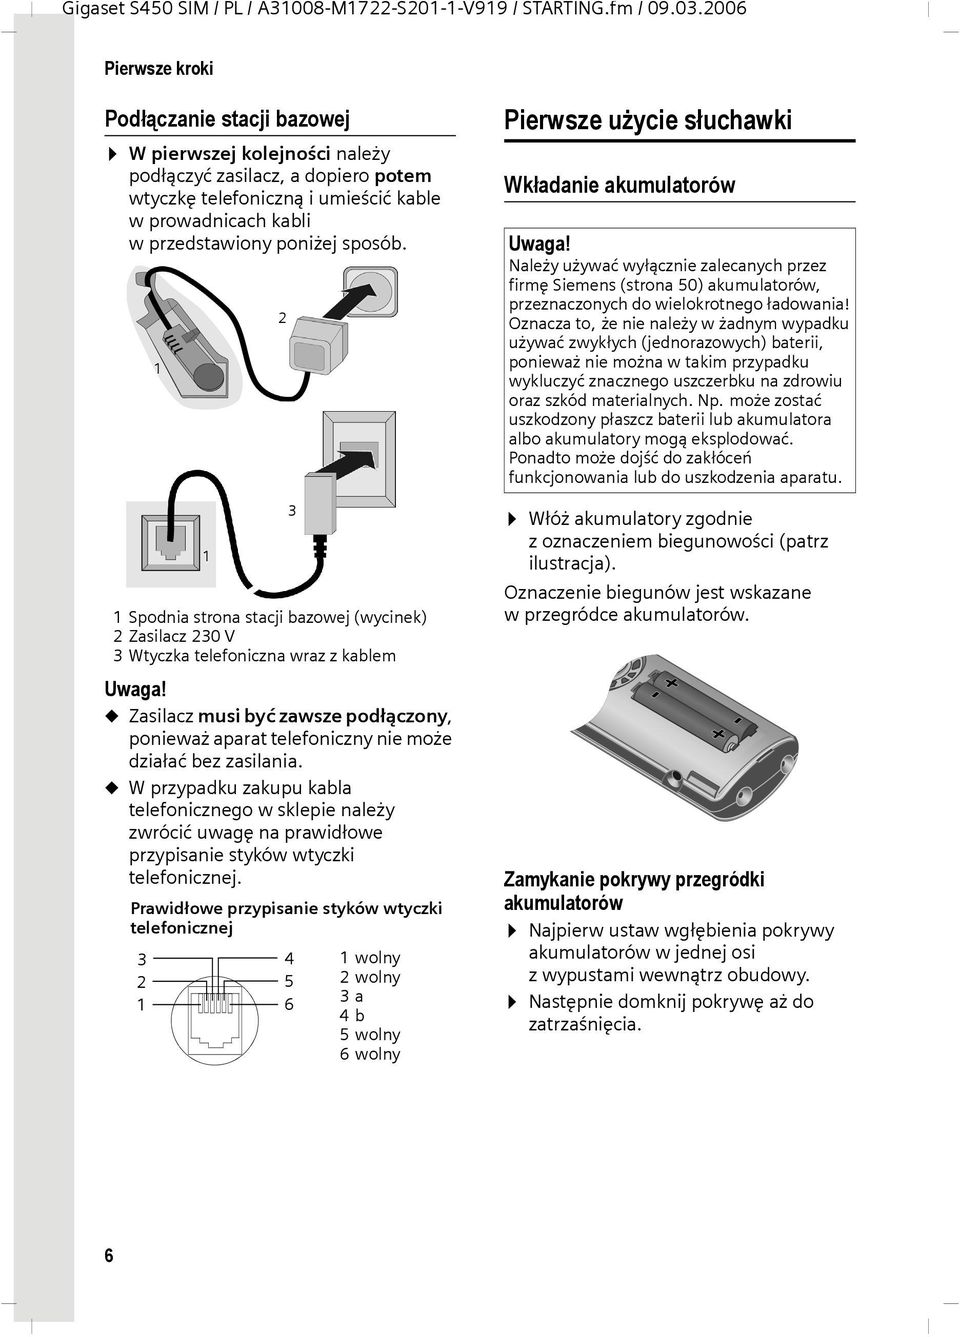 sposób. 1 2 Pierwsze użycie słuchawki Wkładanie akumulatorów Uwaga! Należy używać wyłącznie zalecanych przez firmę Siemens (strona 50) akumulatorów, przeznaczonych do wielokrotnego ładowania!